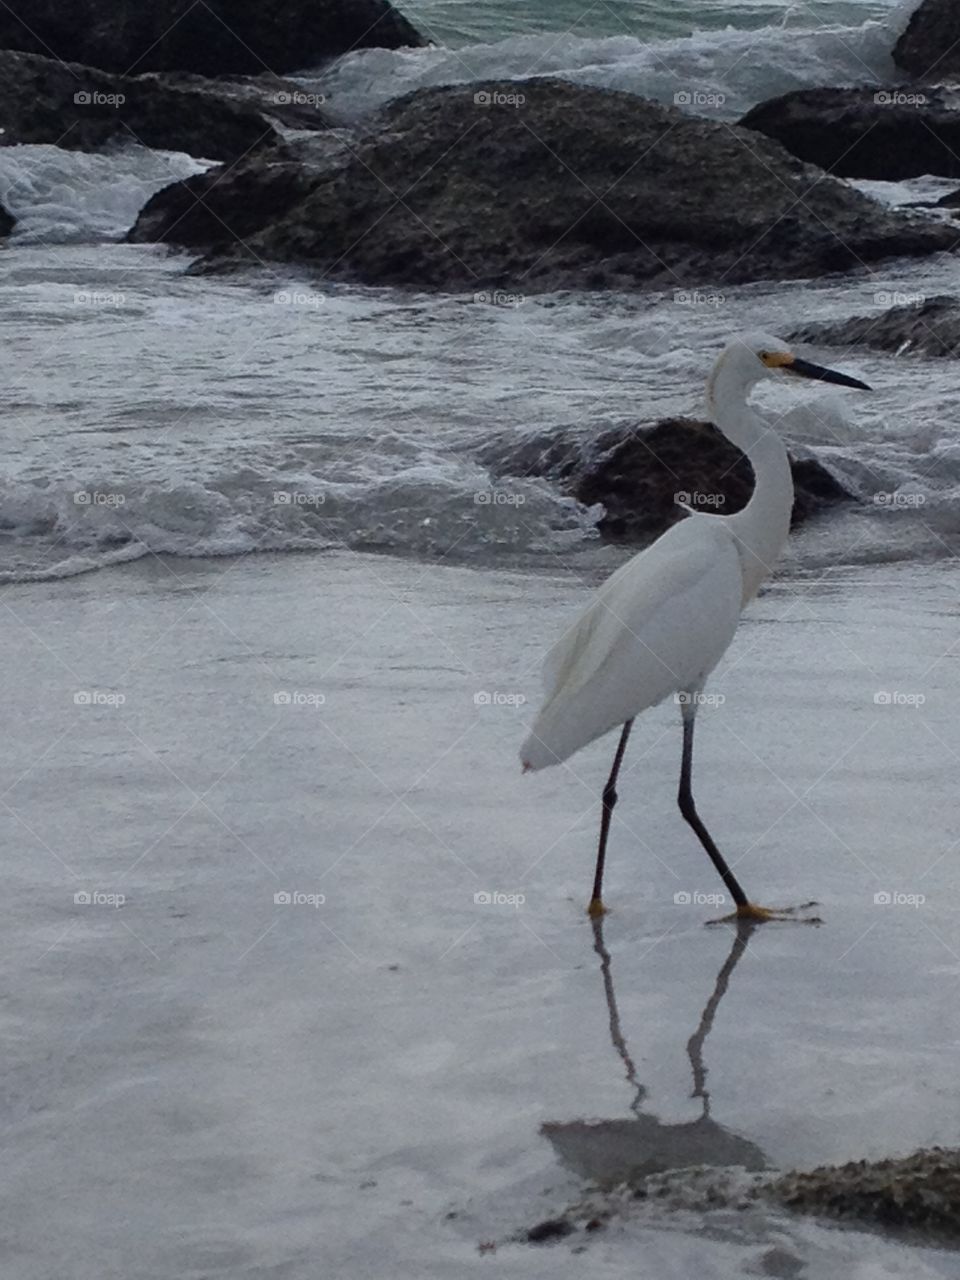 Bird on the beach